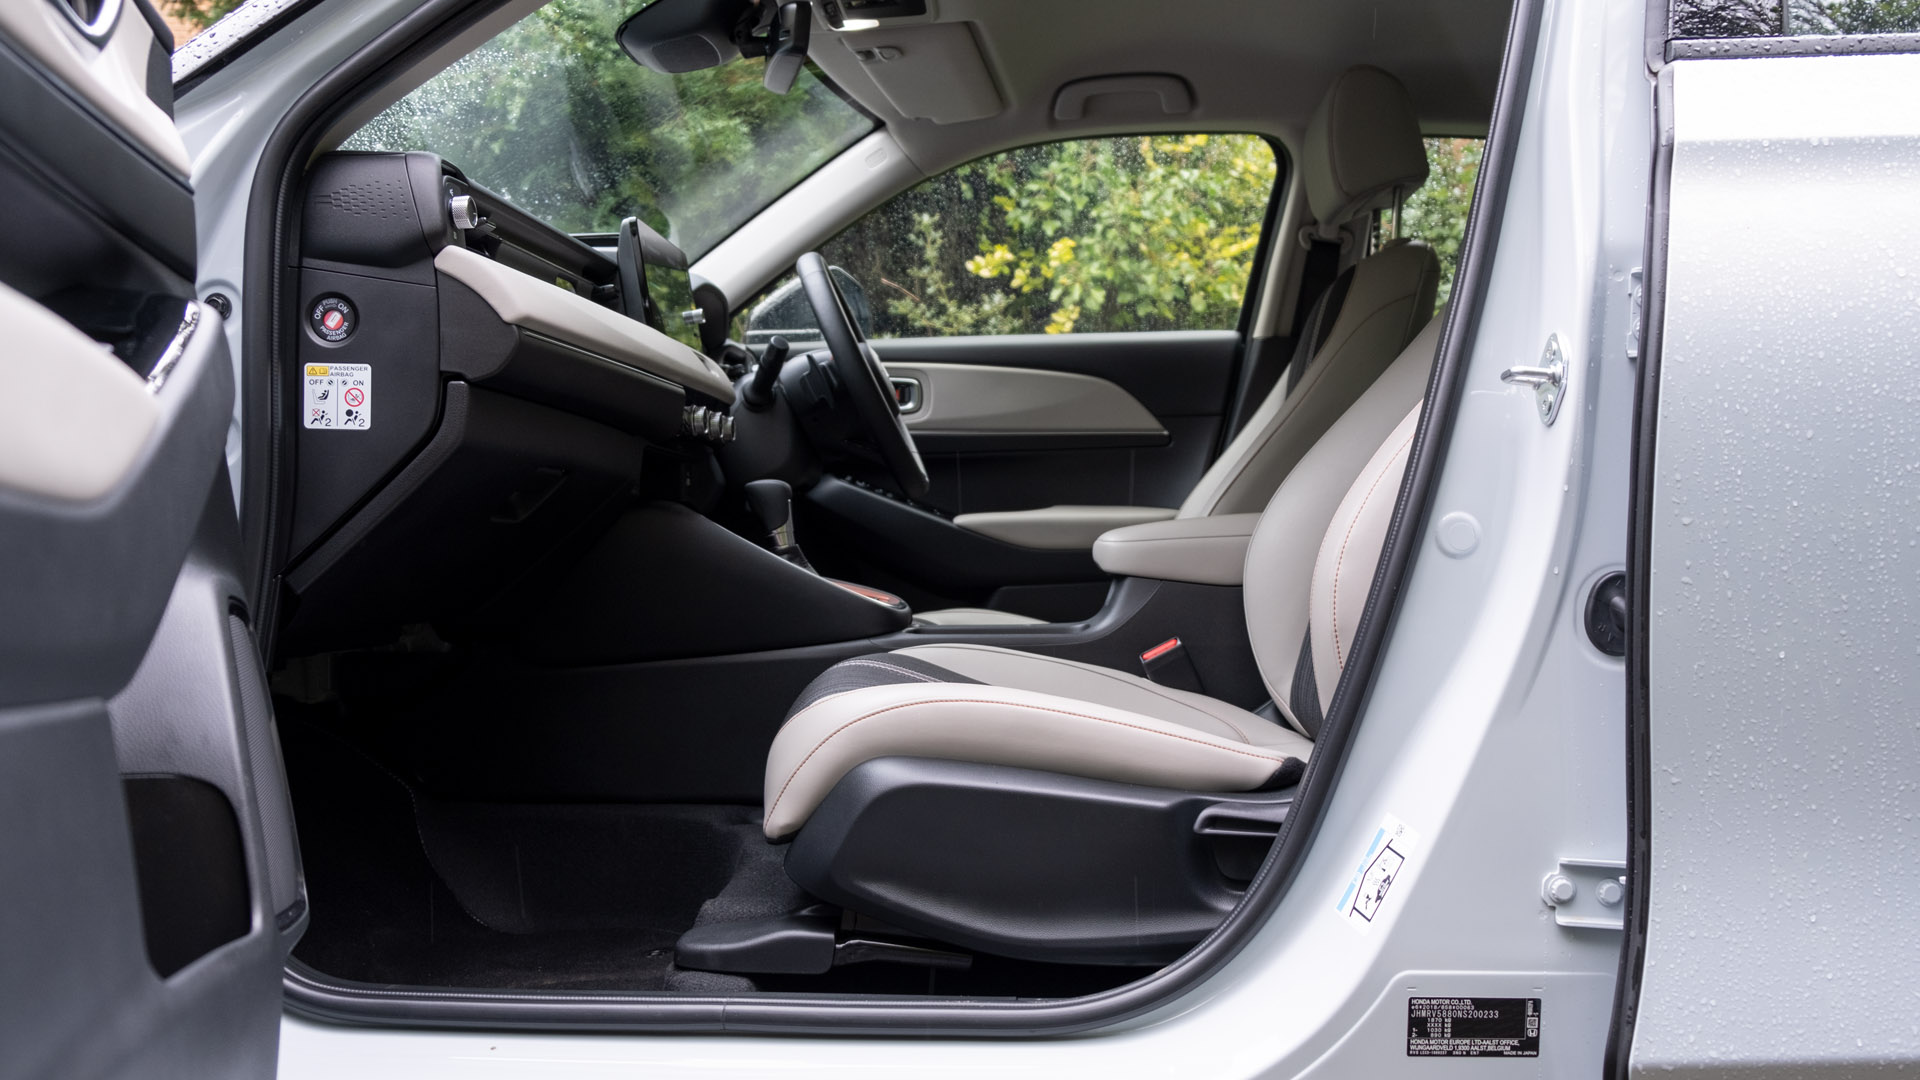 Honda HR-V front seat design